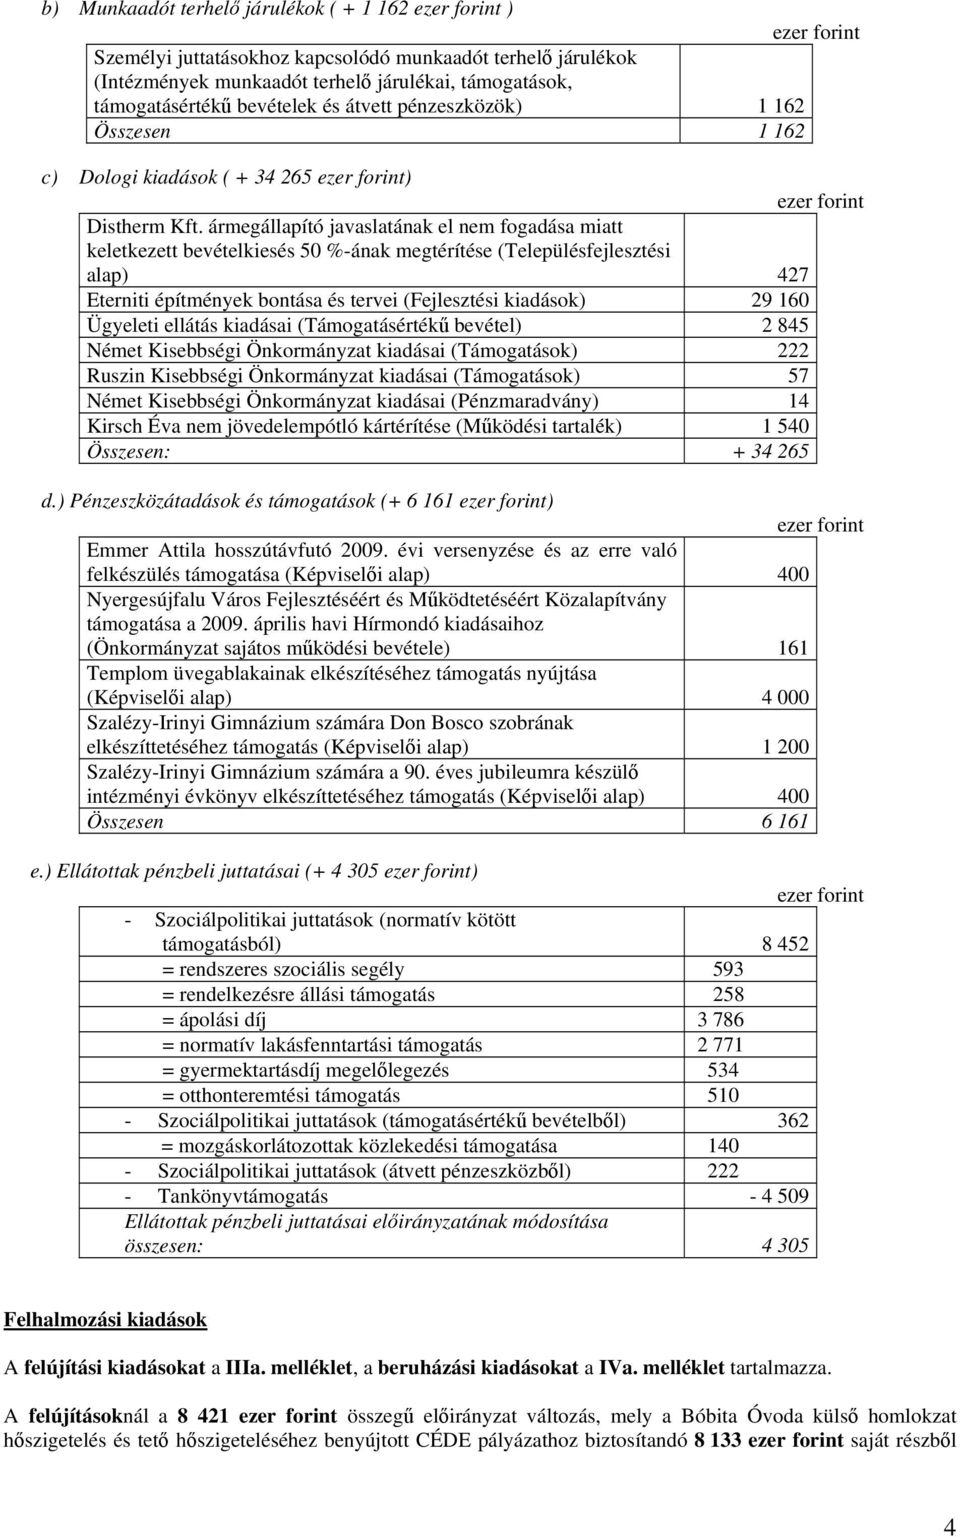 ármegállapító javaslatának el nem fogadása miatt keletkezett bevételkiesés 50 %-ának megtérítése (Településfejlesztési alap) 427 Eterniti építmények bontása és tervei (Fejlesztési kiadások) 29 160